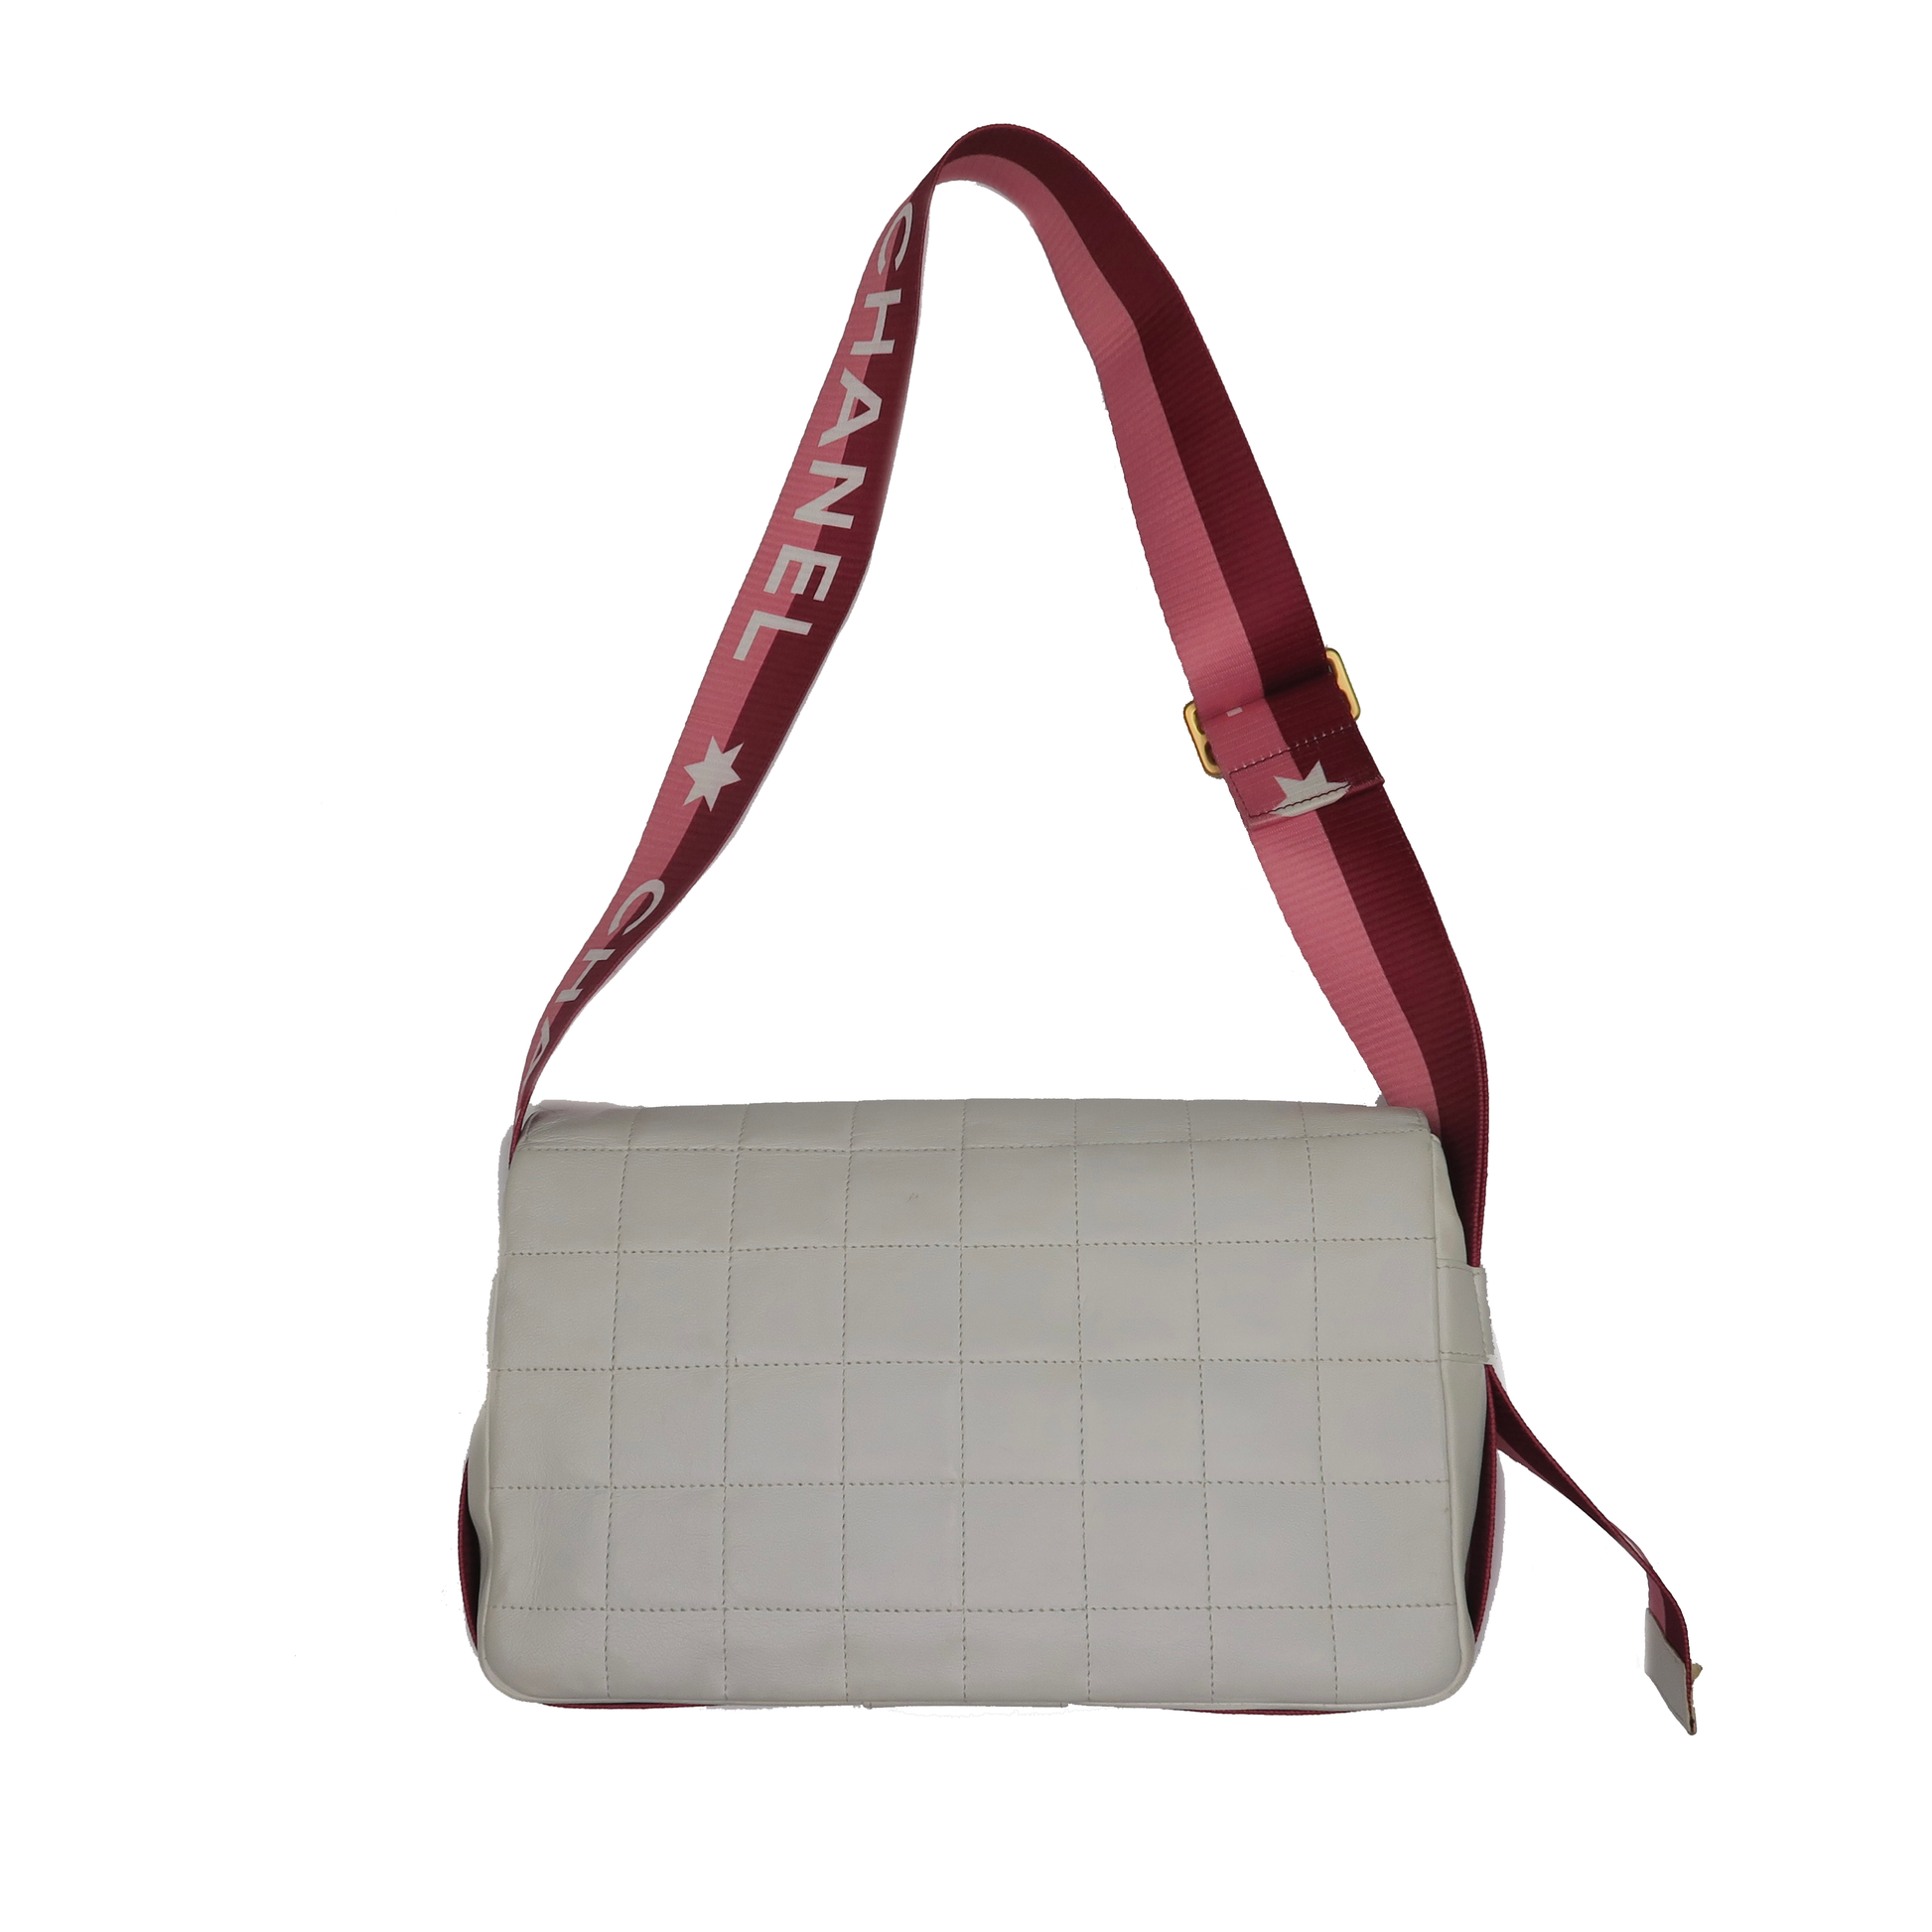 Chanel CC Chocolate Bar Leather Flap Crossbody Bag – sourcedbyMel